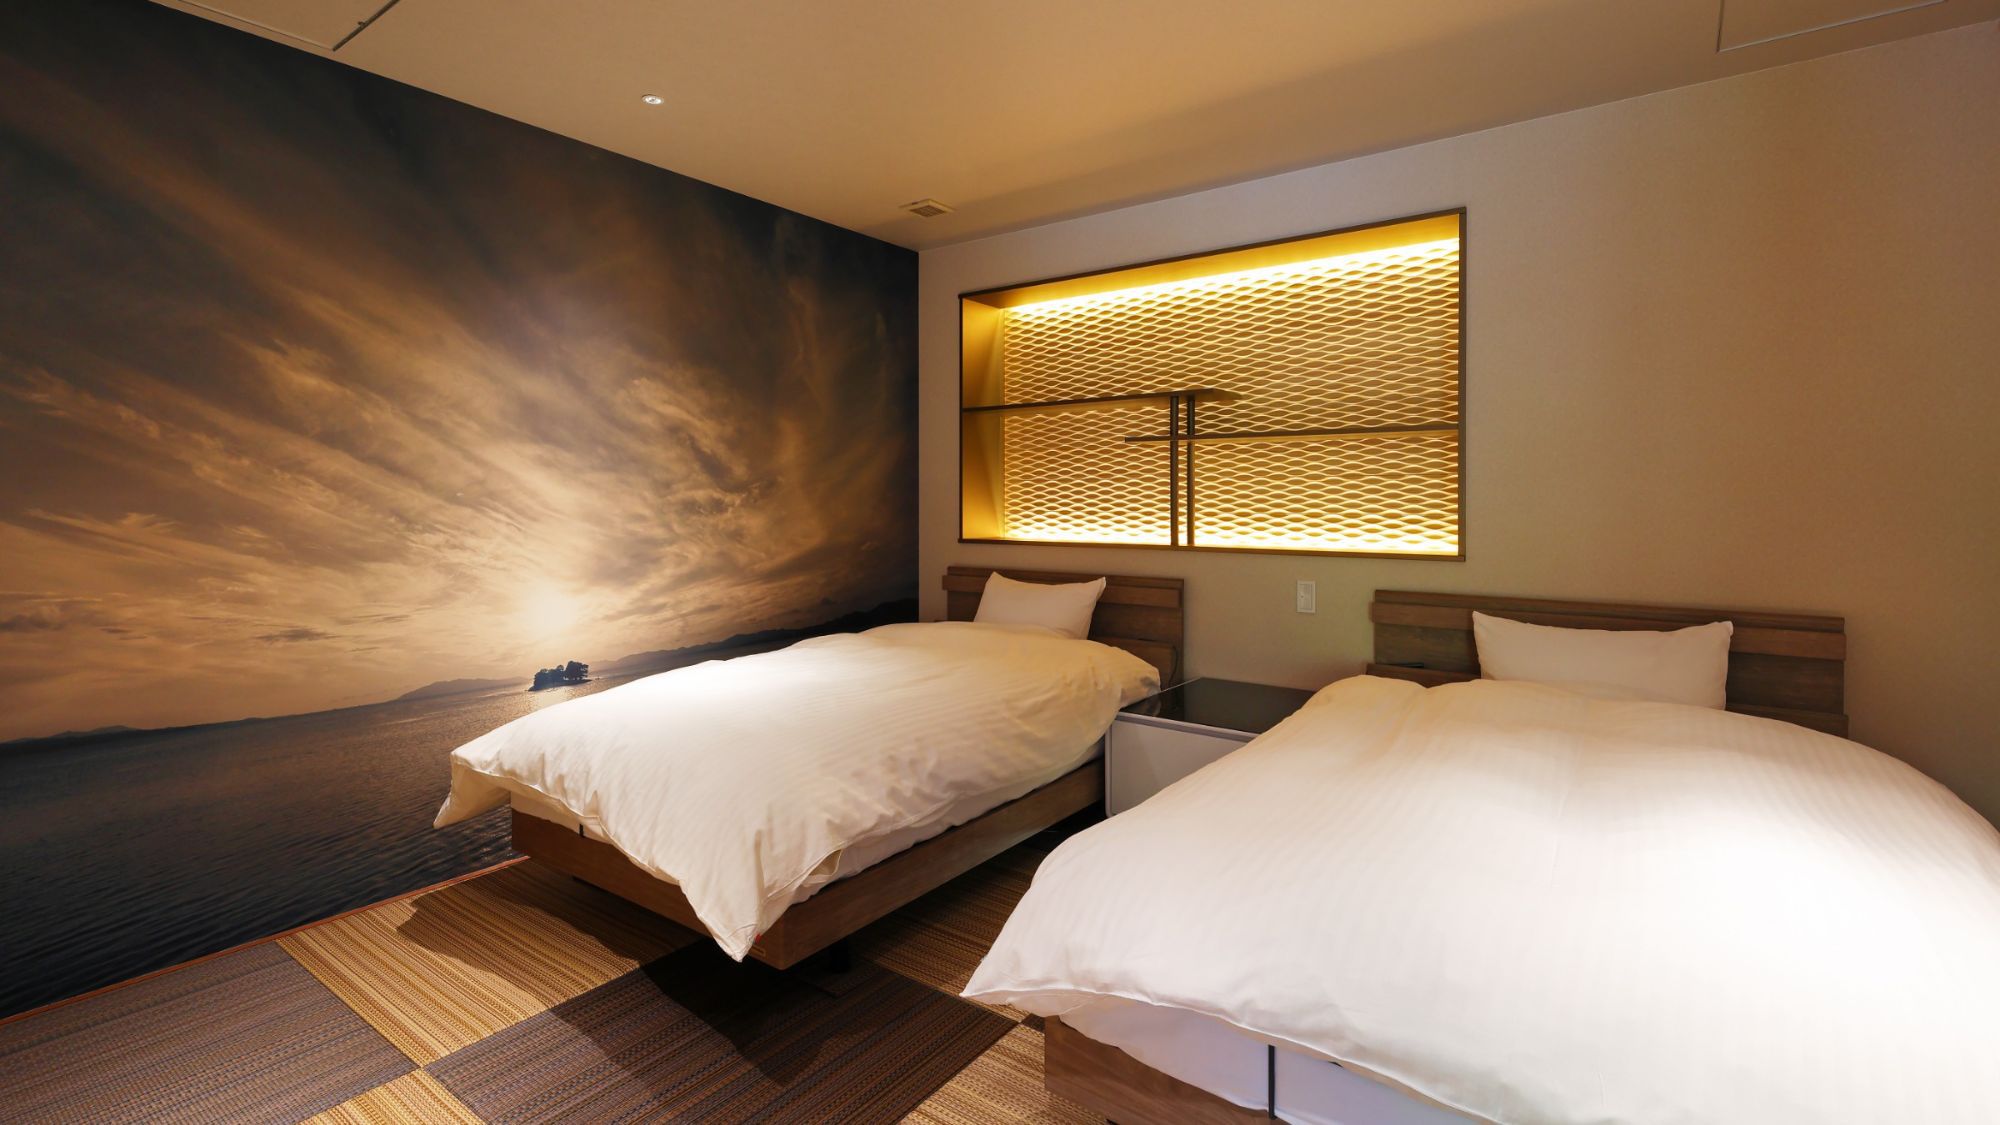 【プレミアムルーム】寝室は最高のリラックス空間♪セミダブルのリクライニングベッドをご用意しております